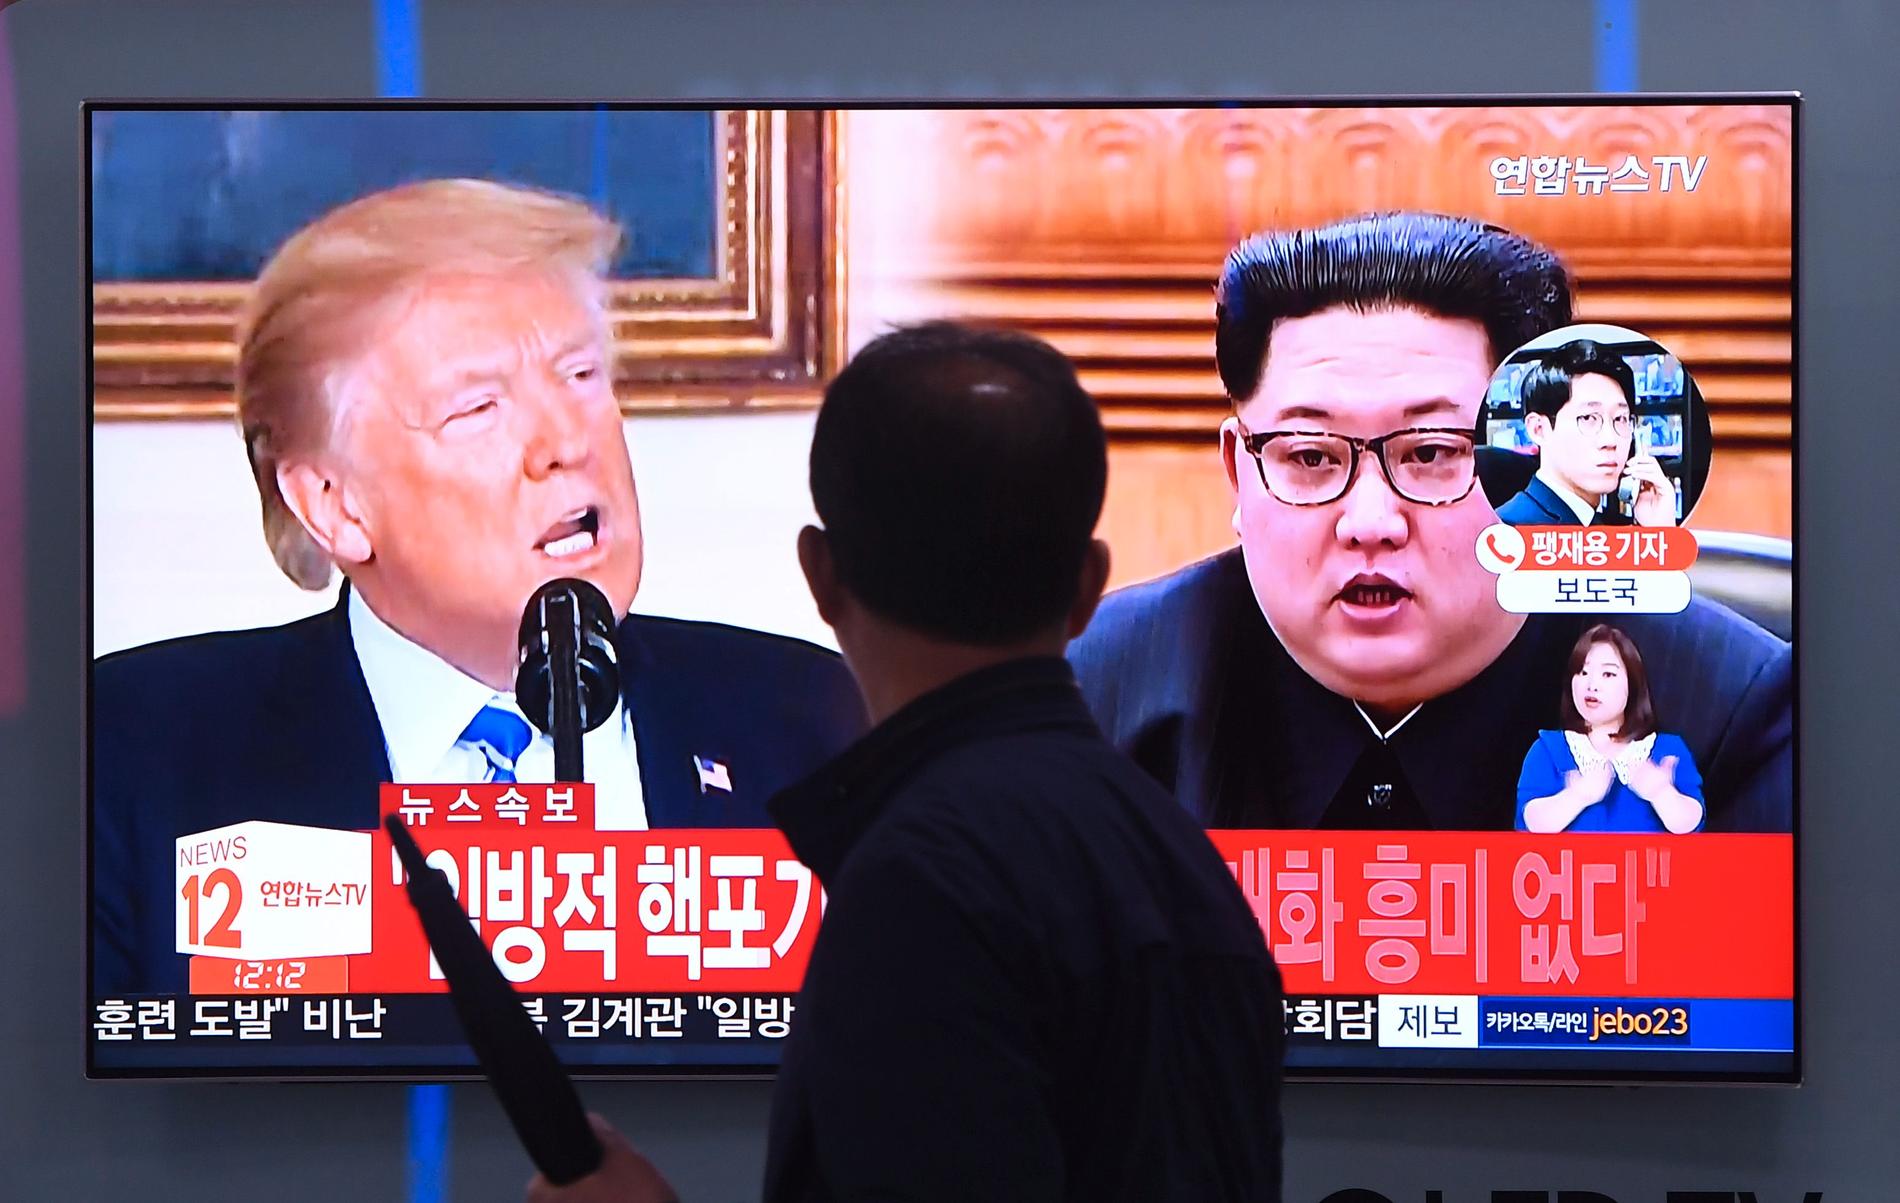 På torsdagen meddelade Trump att det inte blir något möte med Nordkorea. Nu öppnar han för ett möte. 